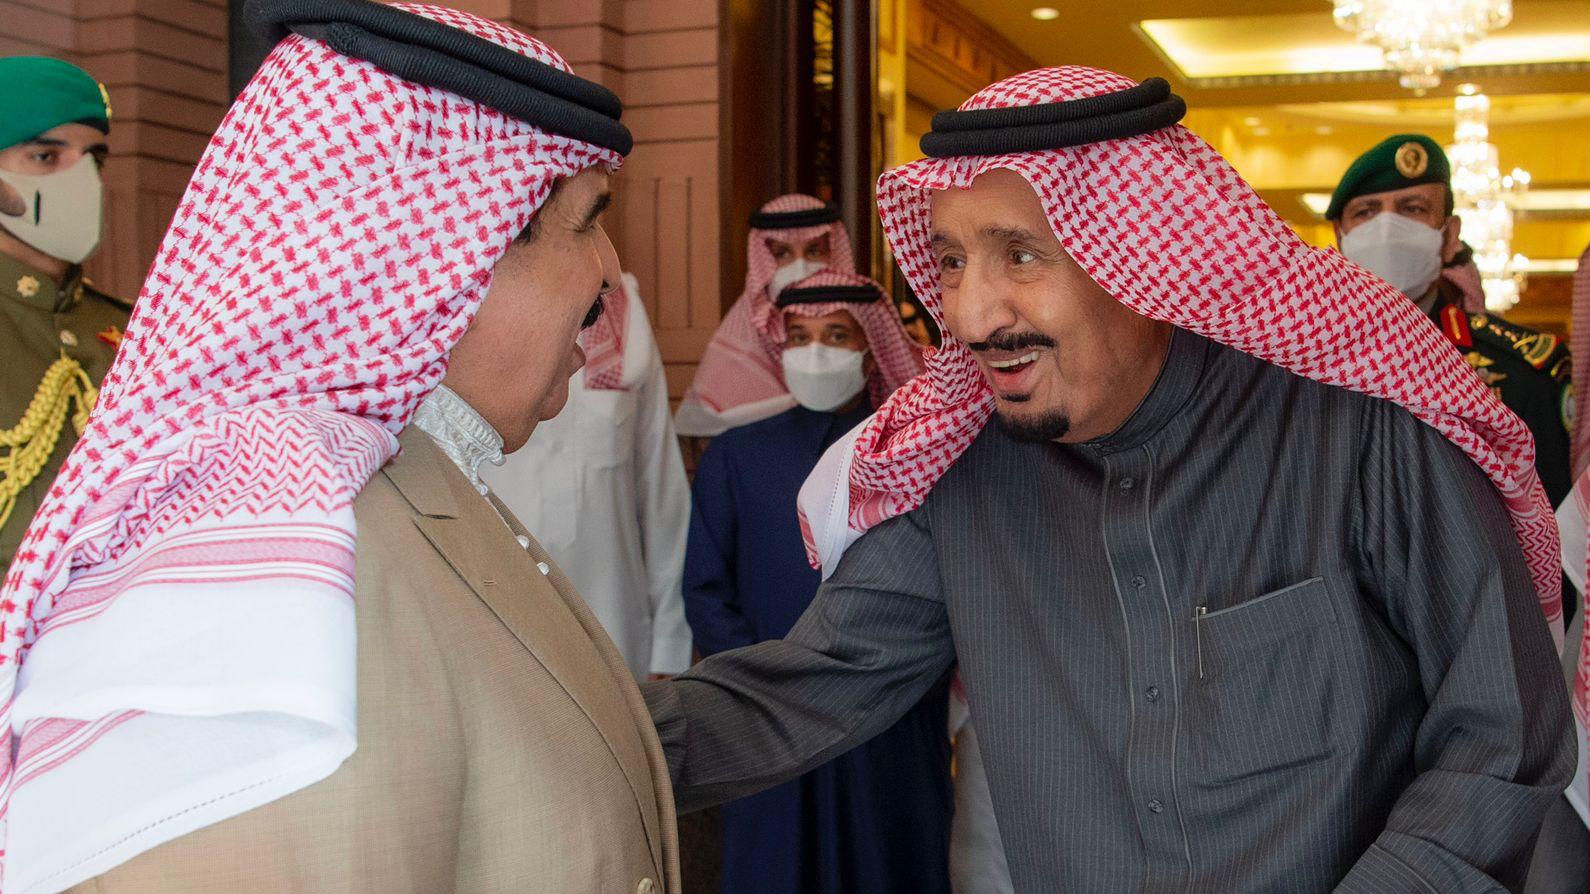 الملك سلمان بن عبد العزيز آل سعودي مستقبلًا أخيه ملك البحرين في قصره بالرياض